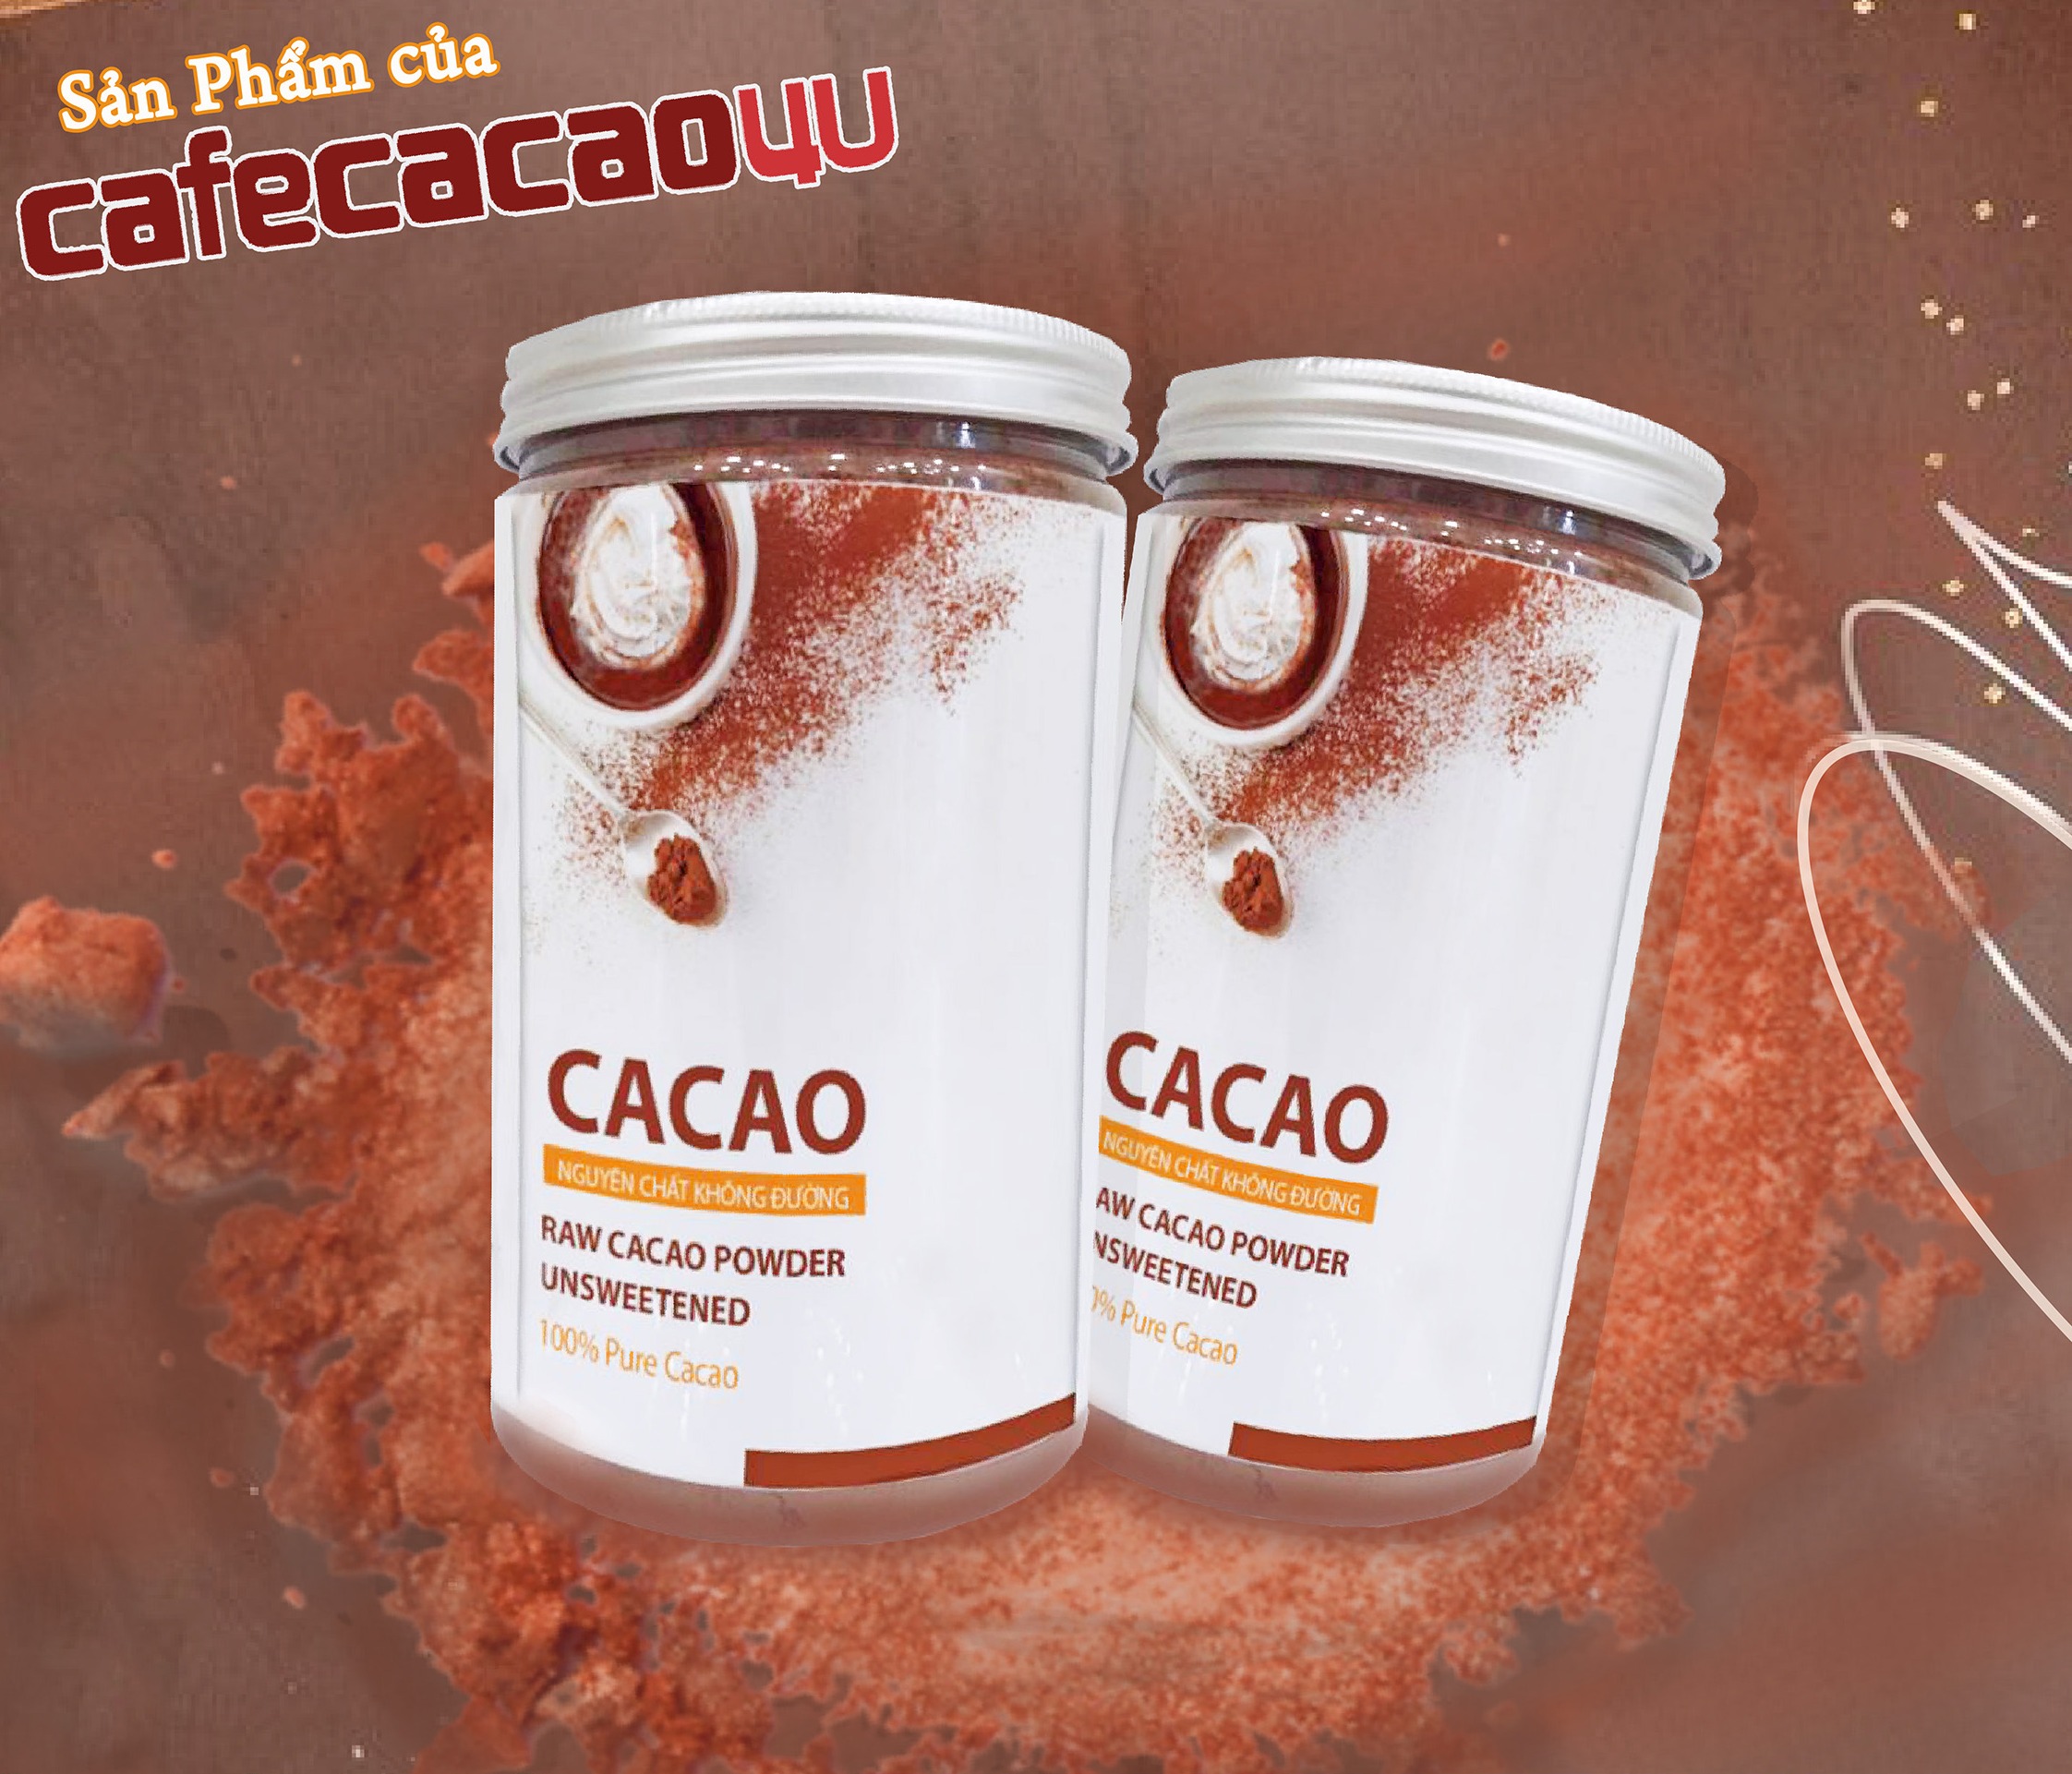 Bộ đôi Cacao nguyên chất Authentique - Hũ 220gr - Hỗ trợ giảm cân